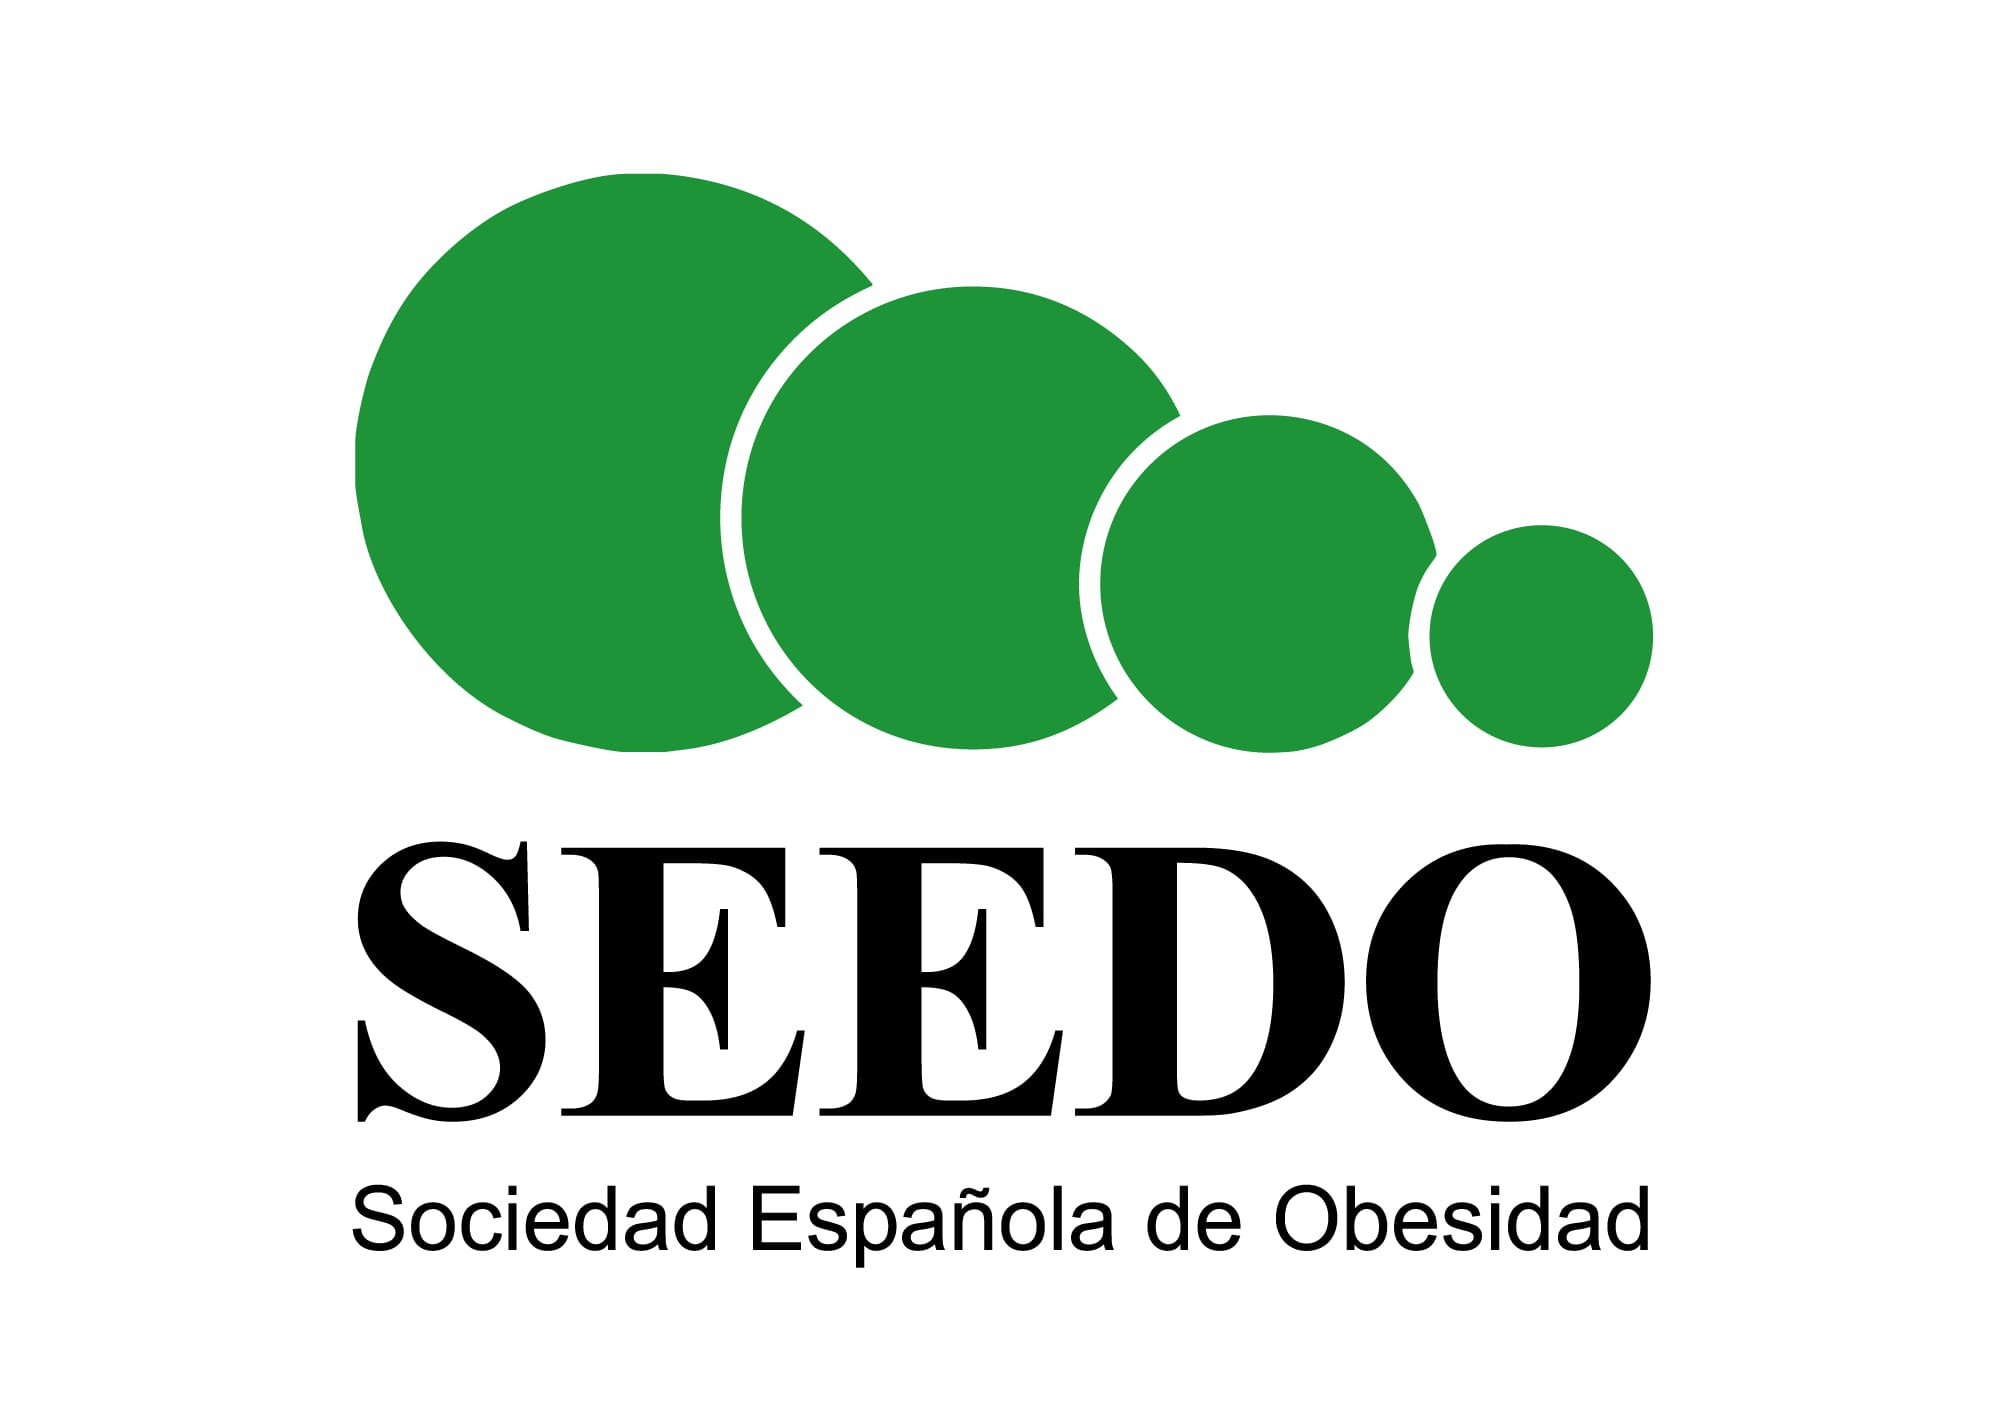 Seedo logo